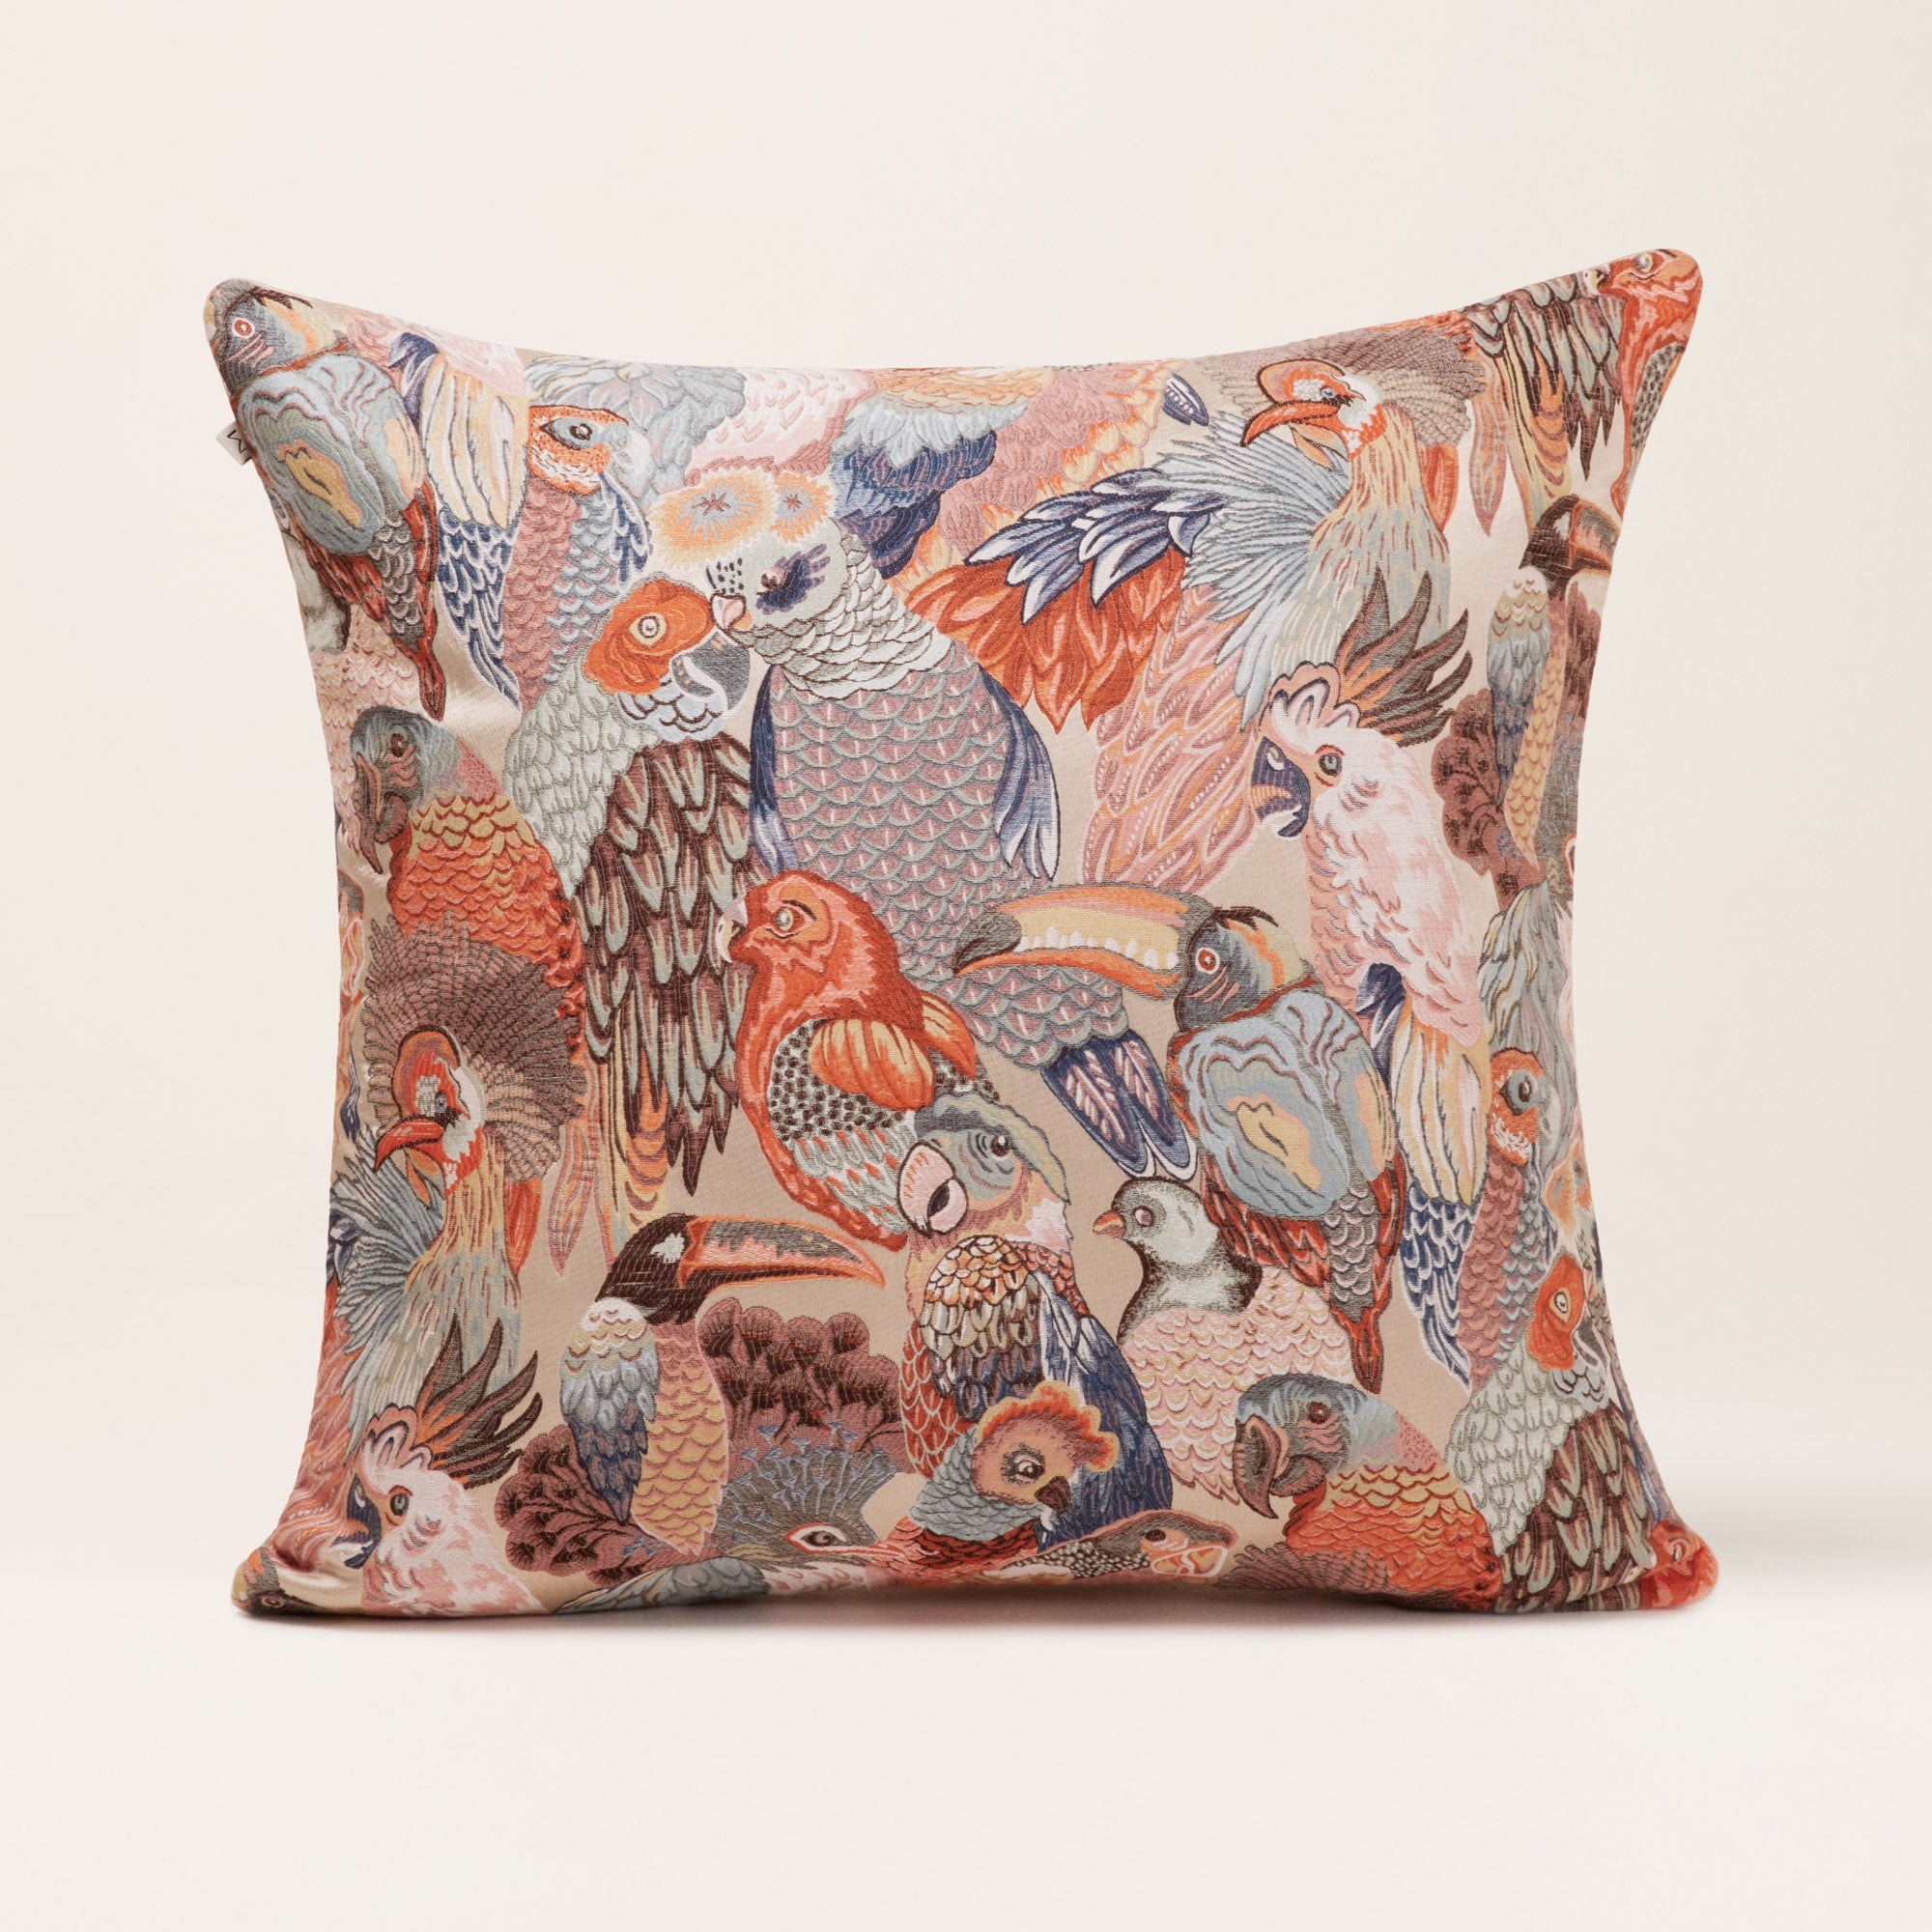 Jungle Birds multicolor rosalbin cushion cover